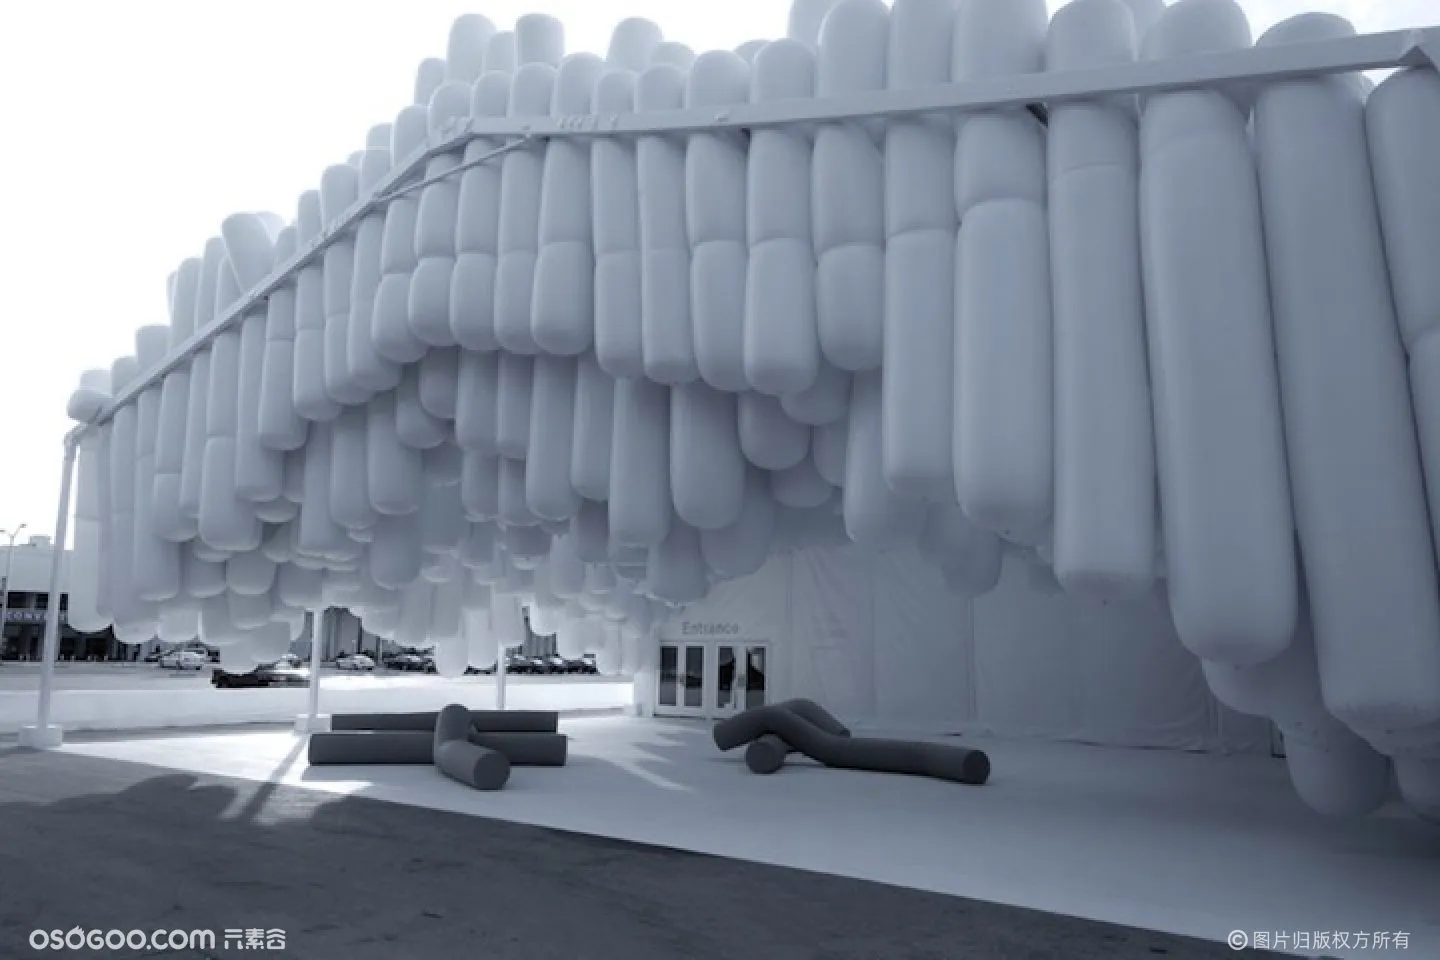 迈阿密设计展「 漂移帐篷艺术装置 」